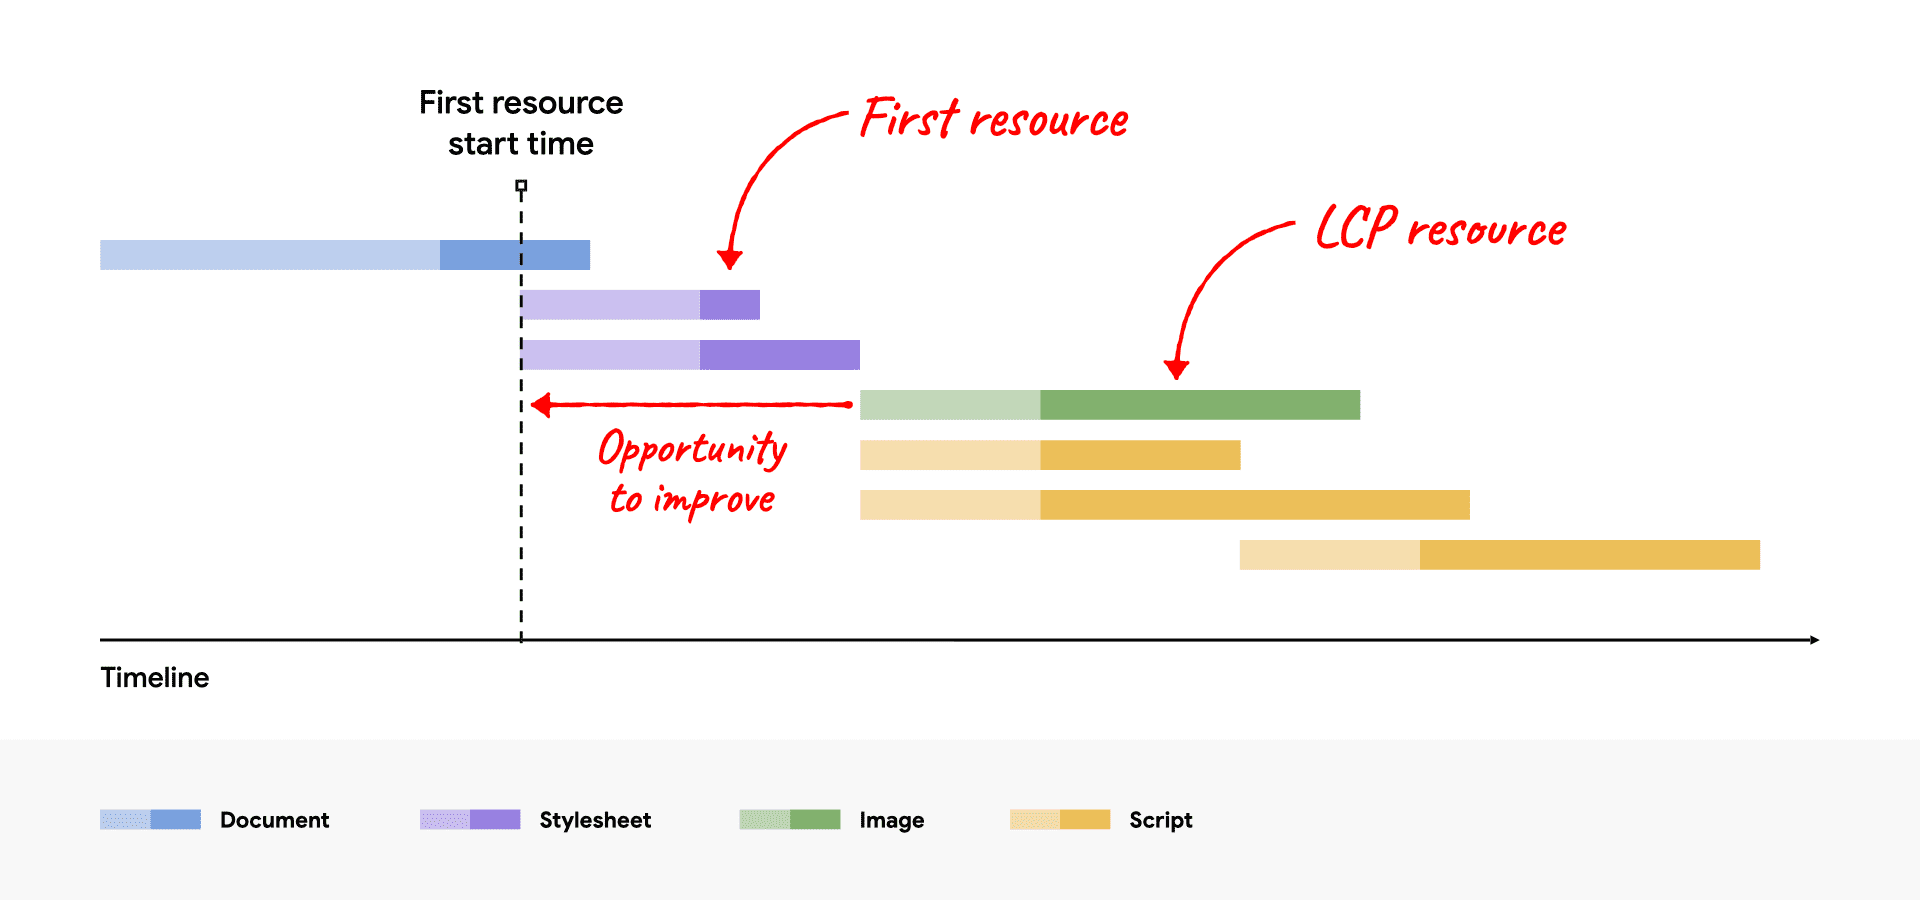 LCP リソースが最初のリソースの後に始まっていることを示す、改善の機会を示すネットワークのウォーターフォール図